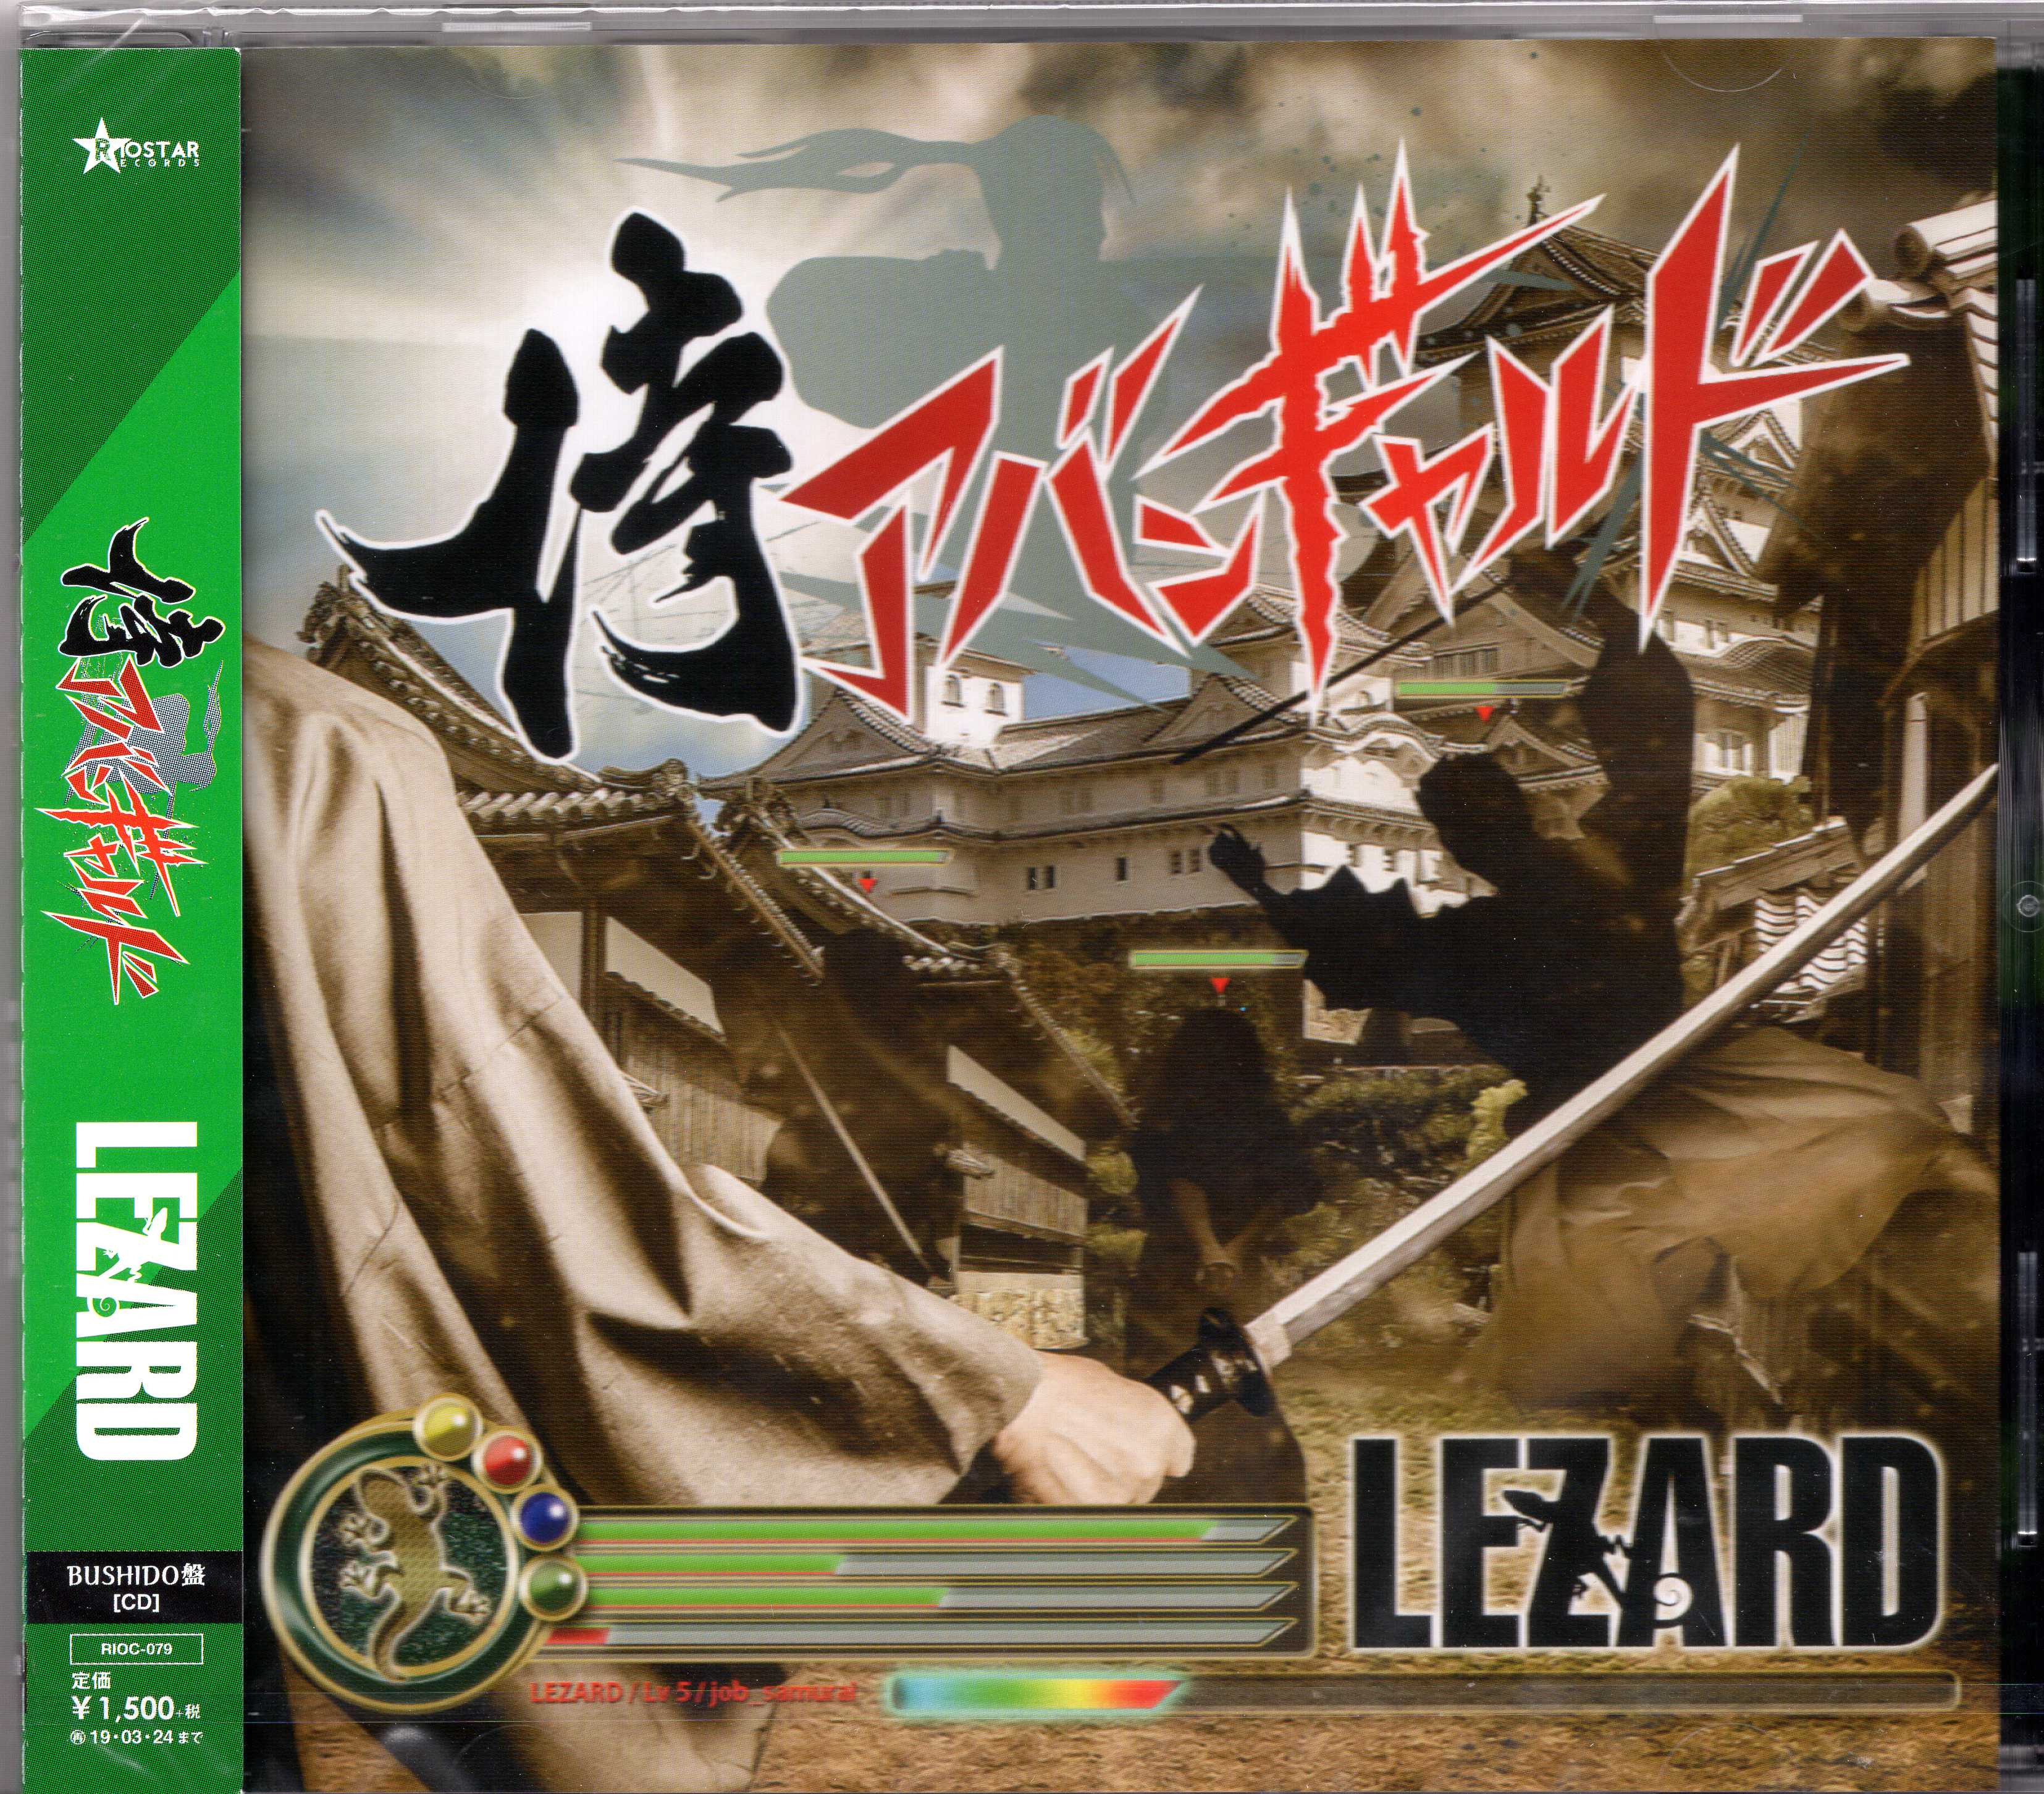 LEZARD ( リザード )  の CD 【BUSHIDO盤】侍アバンギャルド